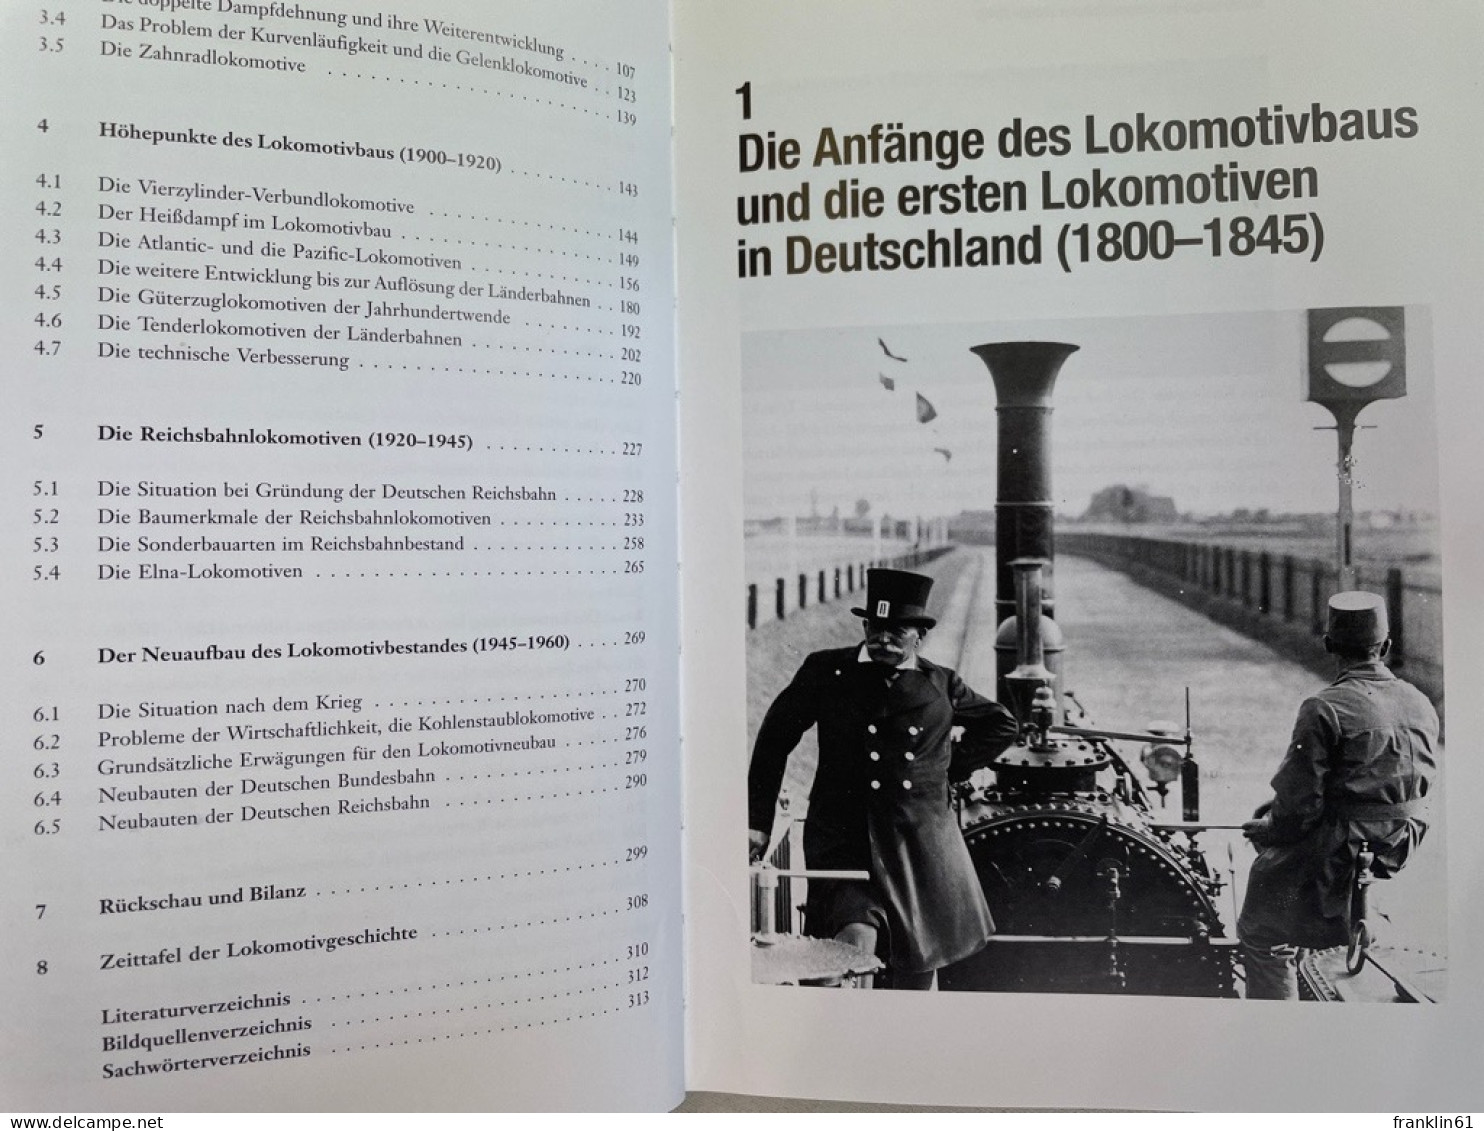 Deutsche Dampflokomotiven : Die Entwicklungsgeschichte. - Transporte